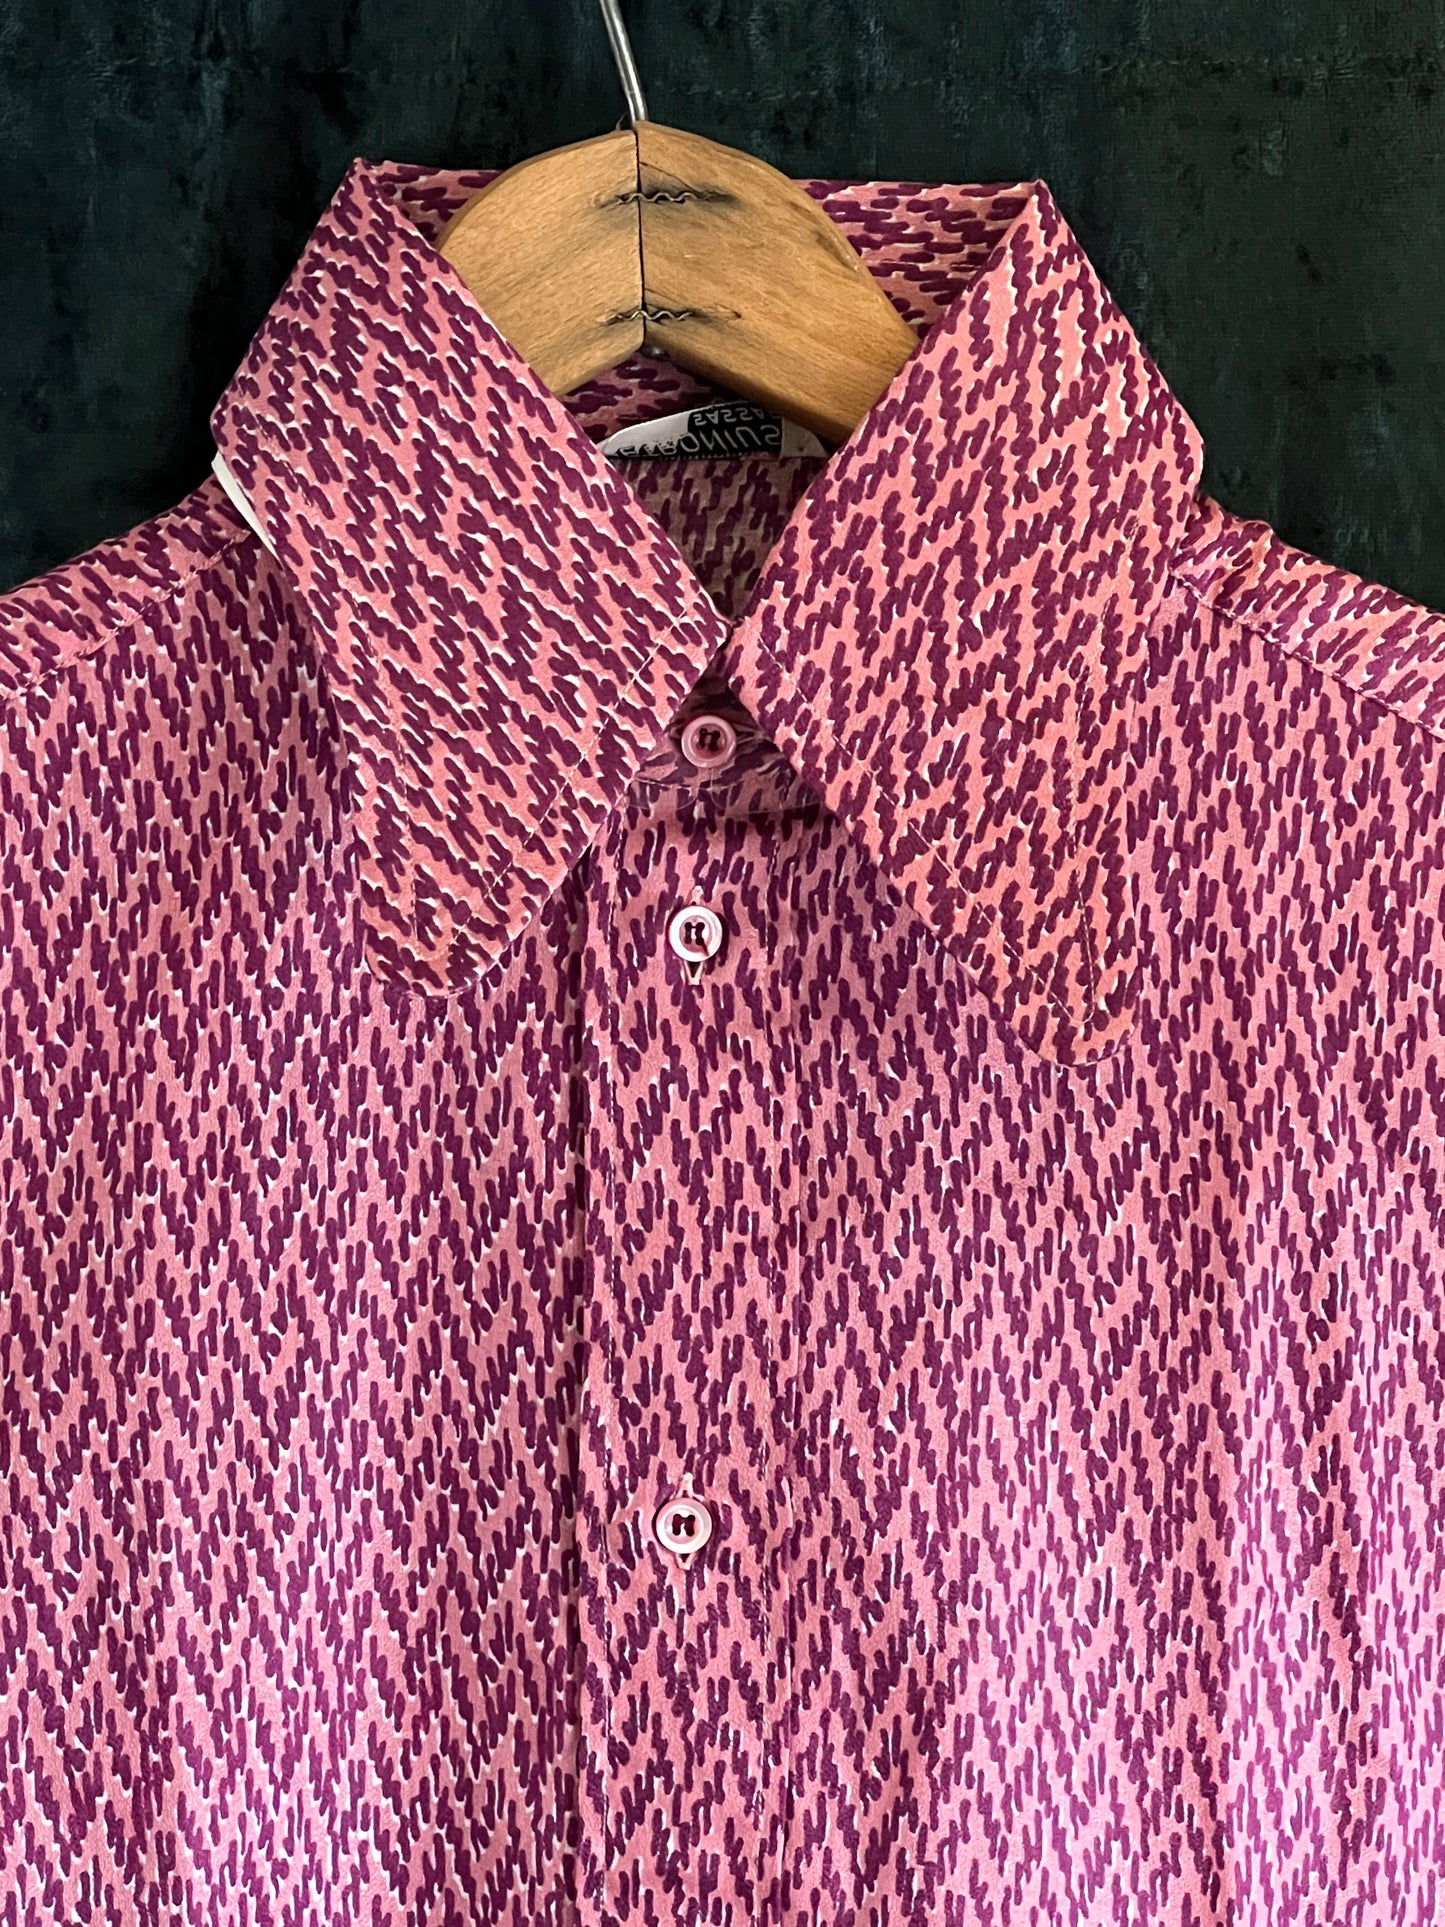 Deadstock Vintage 1970s mans shirt mauve purple large beagle collar Small Sz